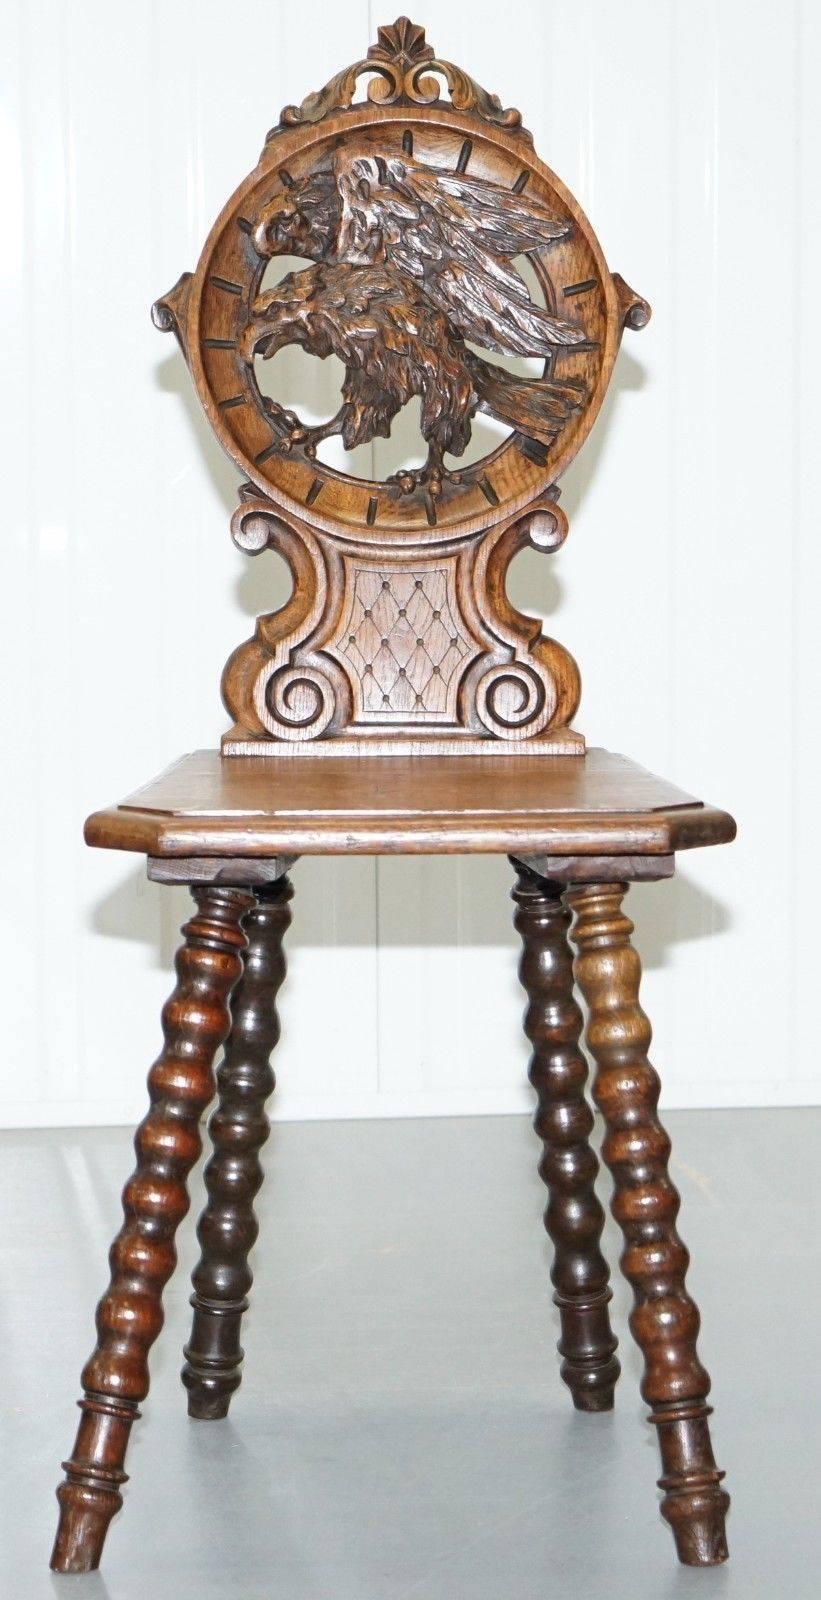 Nous avons le plaisir de proposer à la vente cette magnifique chaise de salon en chêne noir Forrest sculptée à la main, avec des pieds tournés aux fuseaux et un grand faucon à l'arrière, vers le début du 19e siècle.

L'une des plus belles chaises